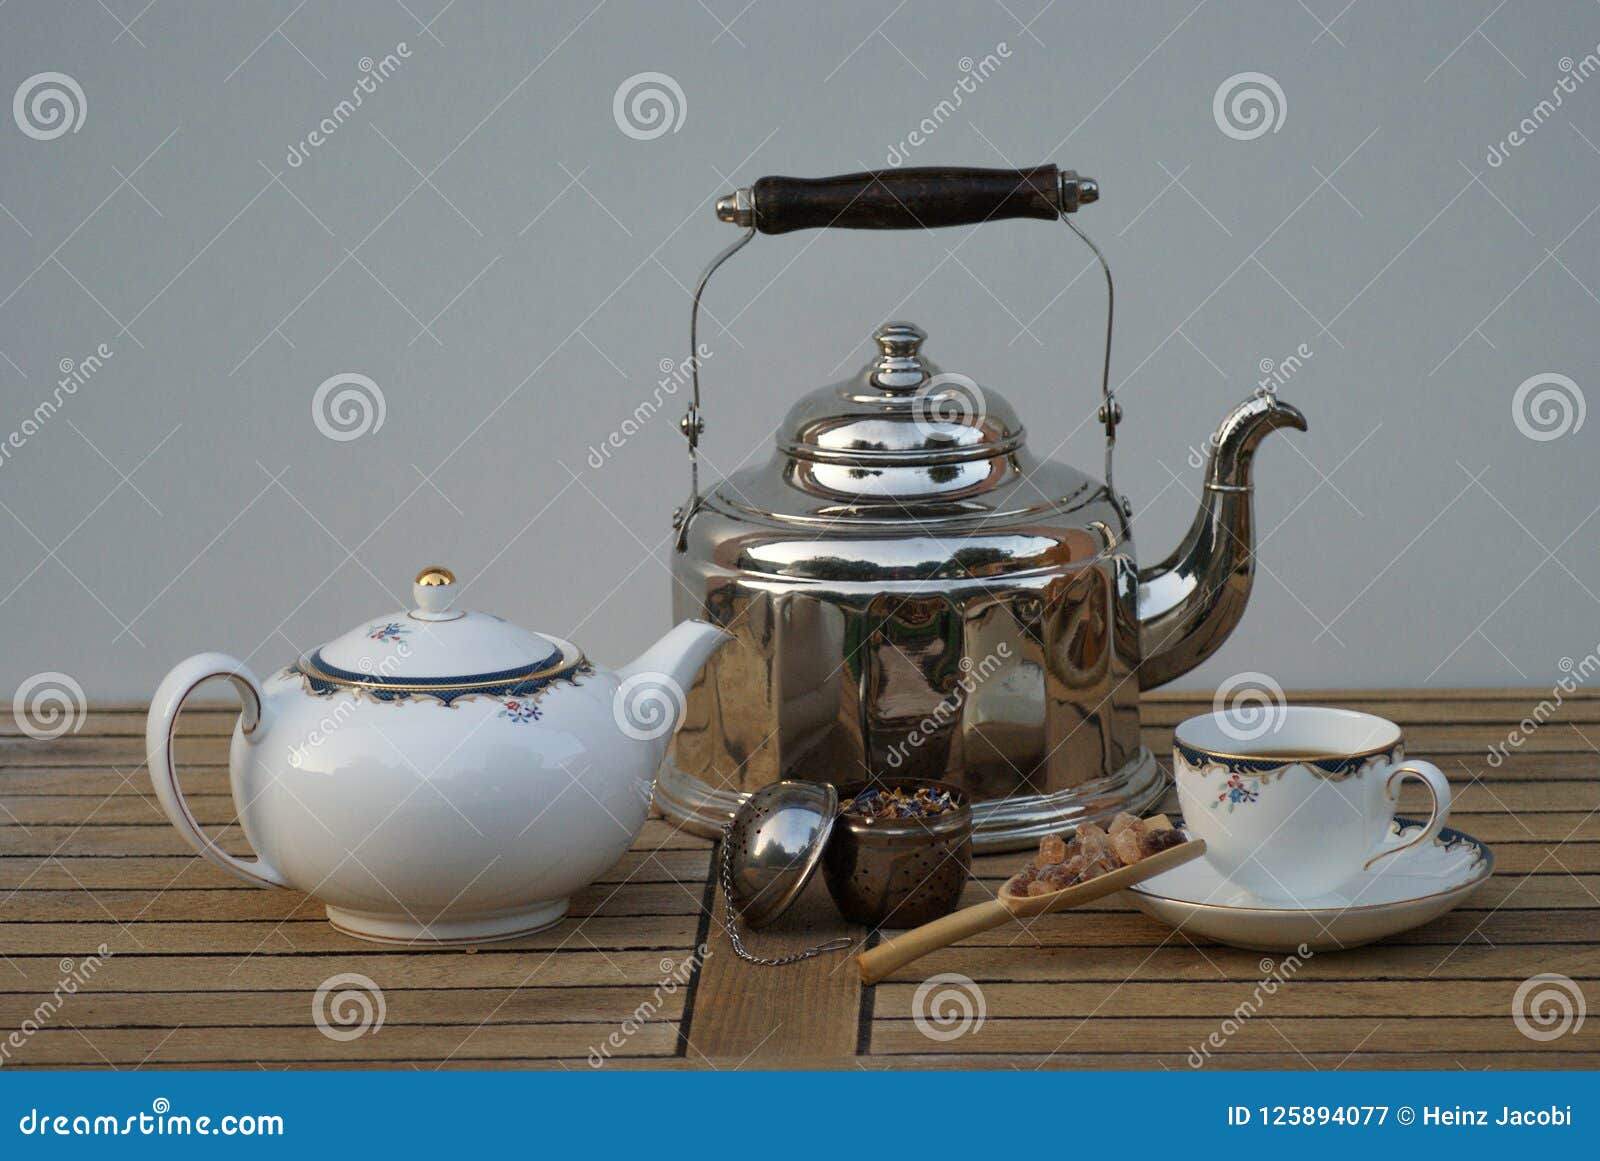 nostalgia tea kettle